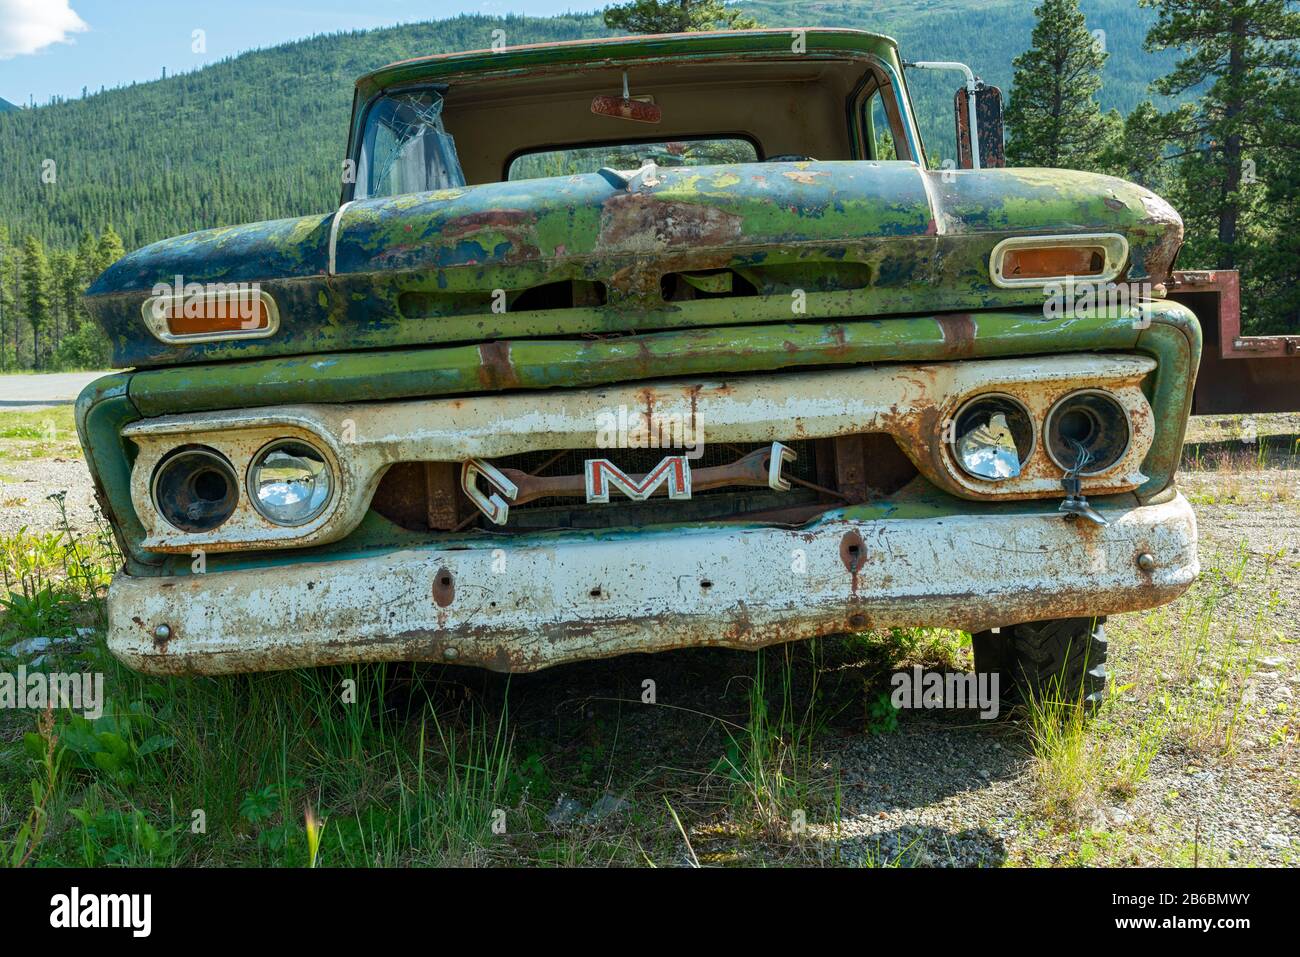 Cassiar, British Columbia, Canada - July 24, 2017: A rusty green GMC pickup in a junkyard Stock Photo